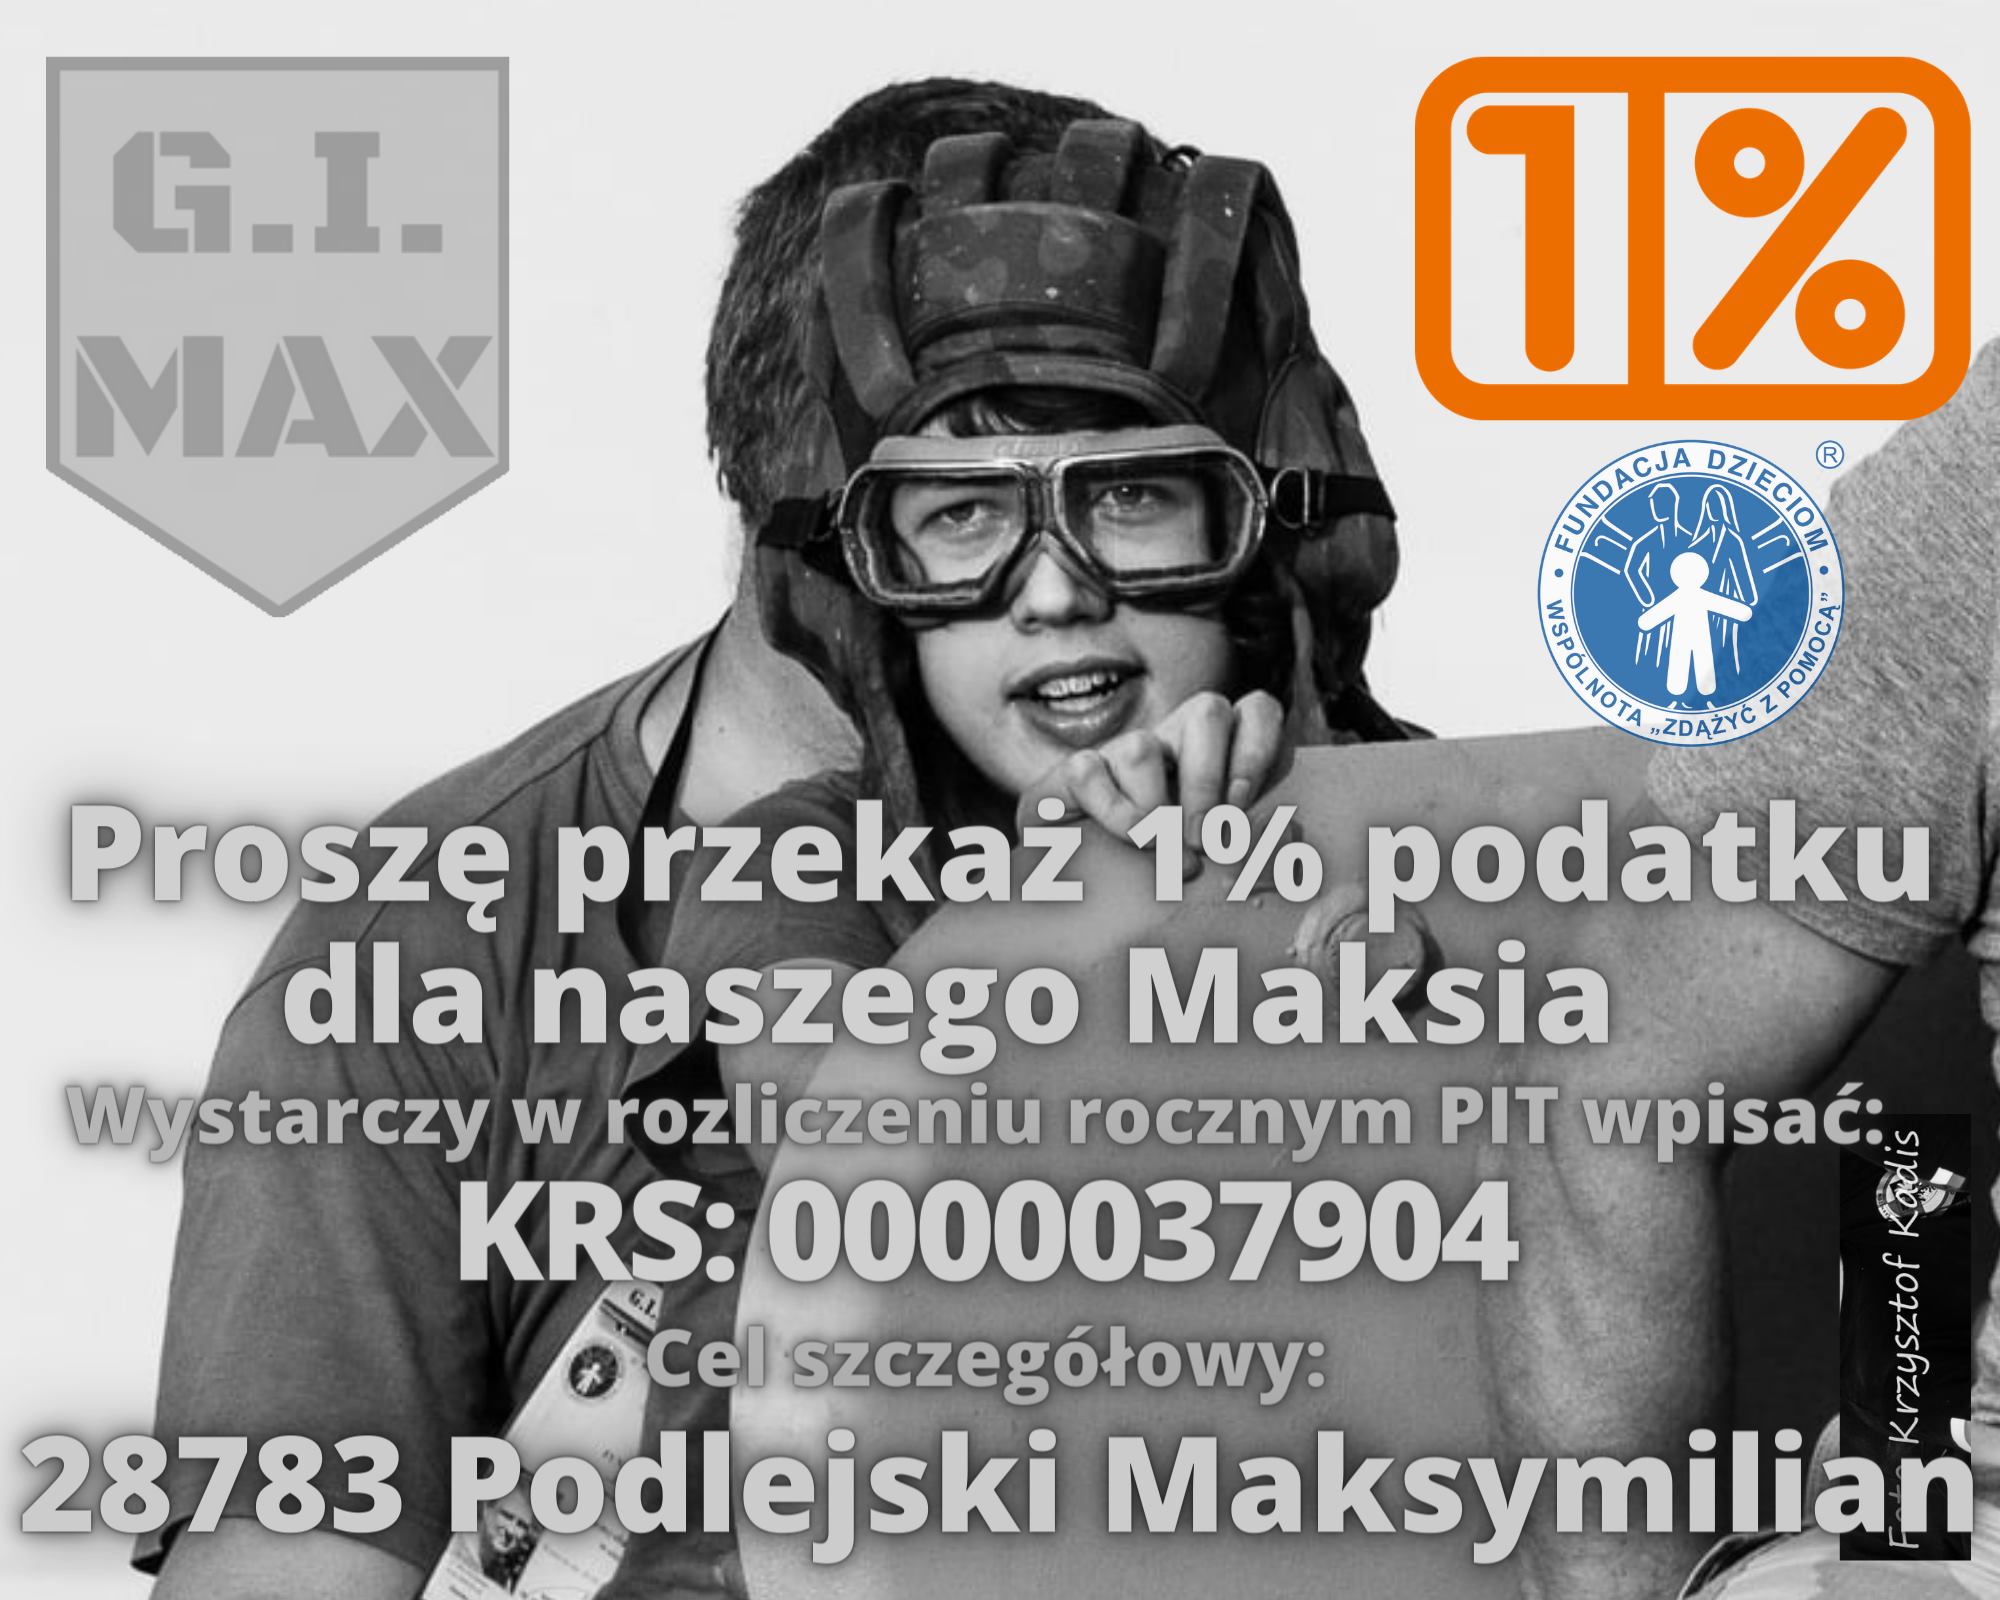 Facebook.com / G.I.MAX - Max Walczy.